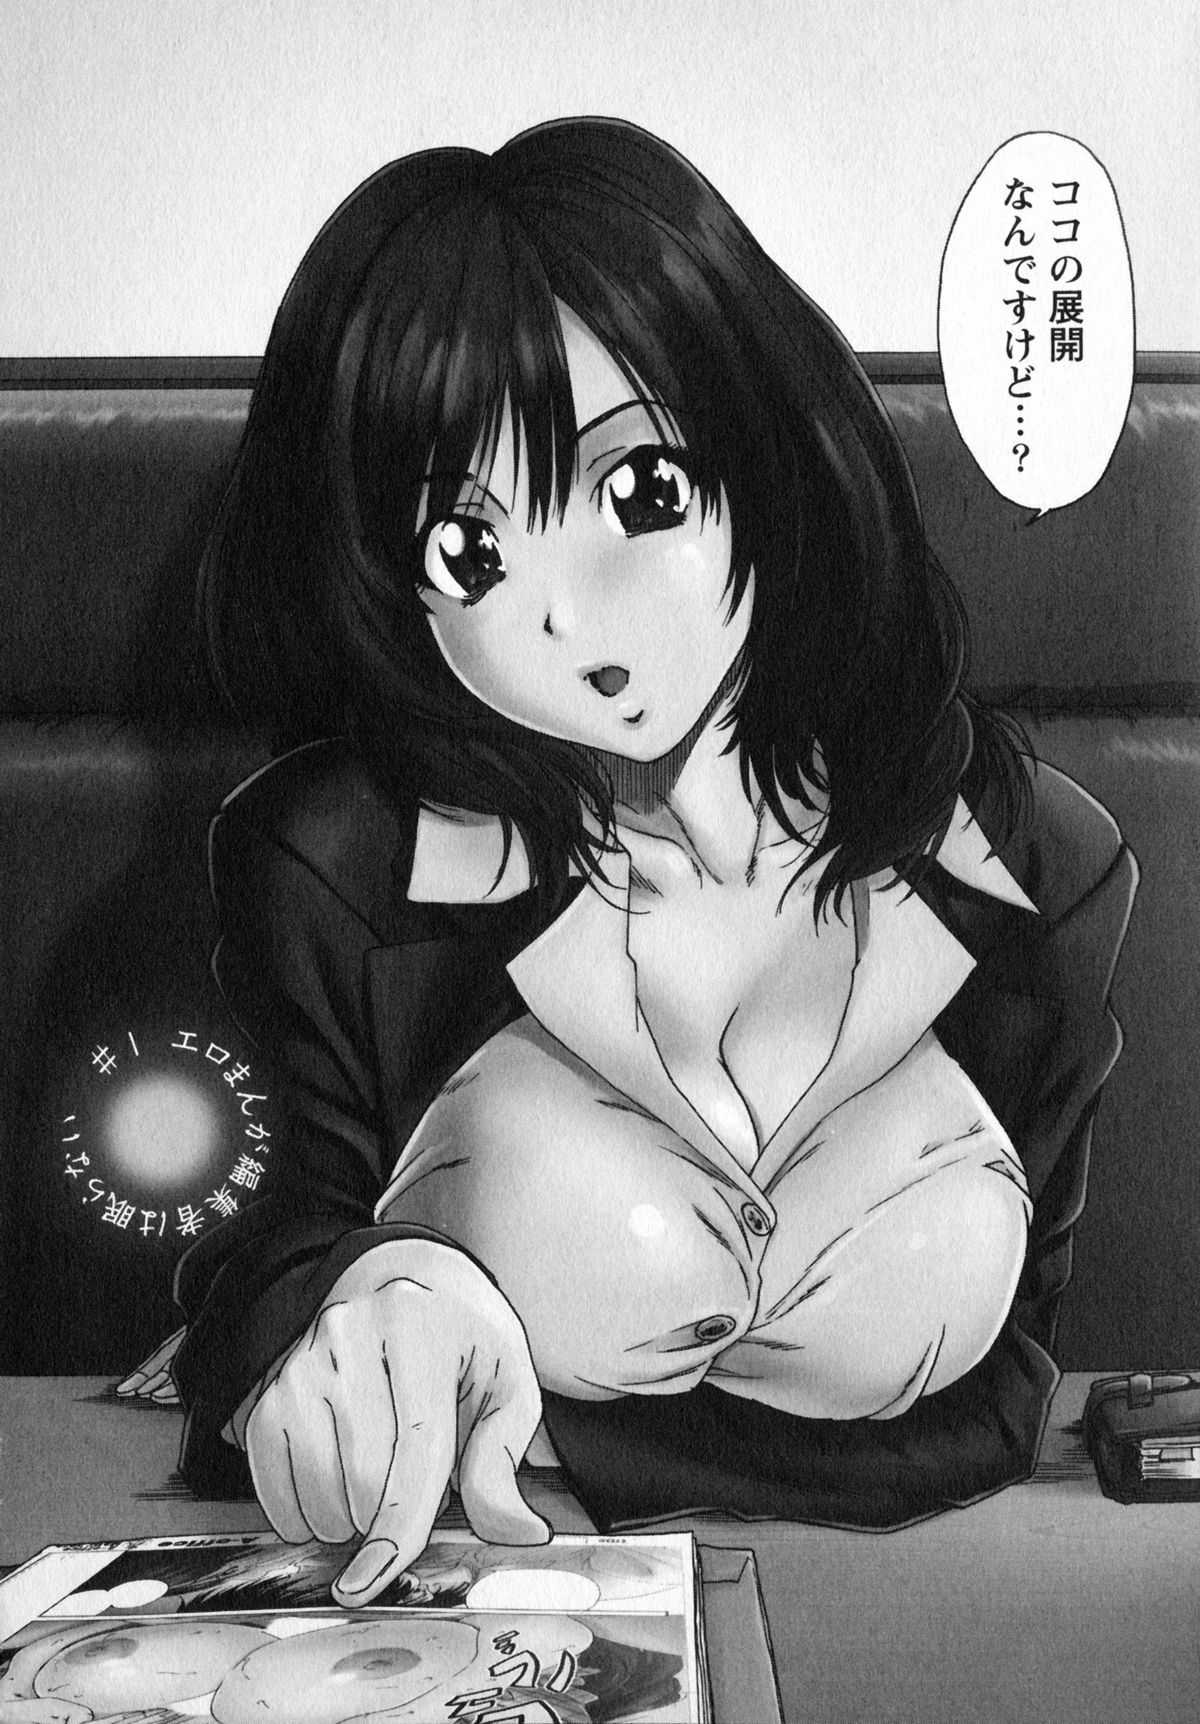 [Yumi Ichirou] Ero Manga Henshuusha Aki Vol.1 [友美イチロウ] エロまんが編集者 Aki Vol.1 [12-03-23]